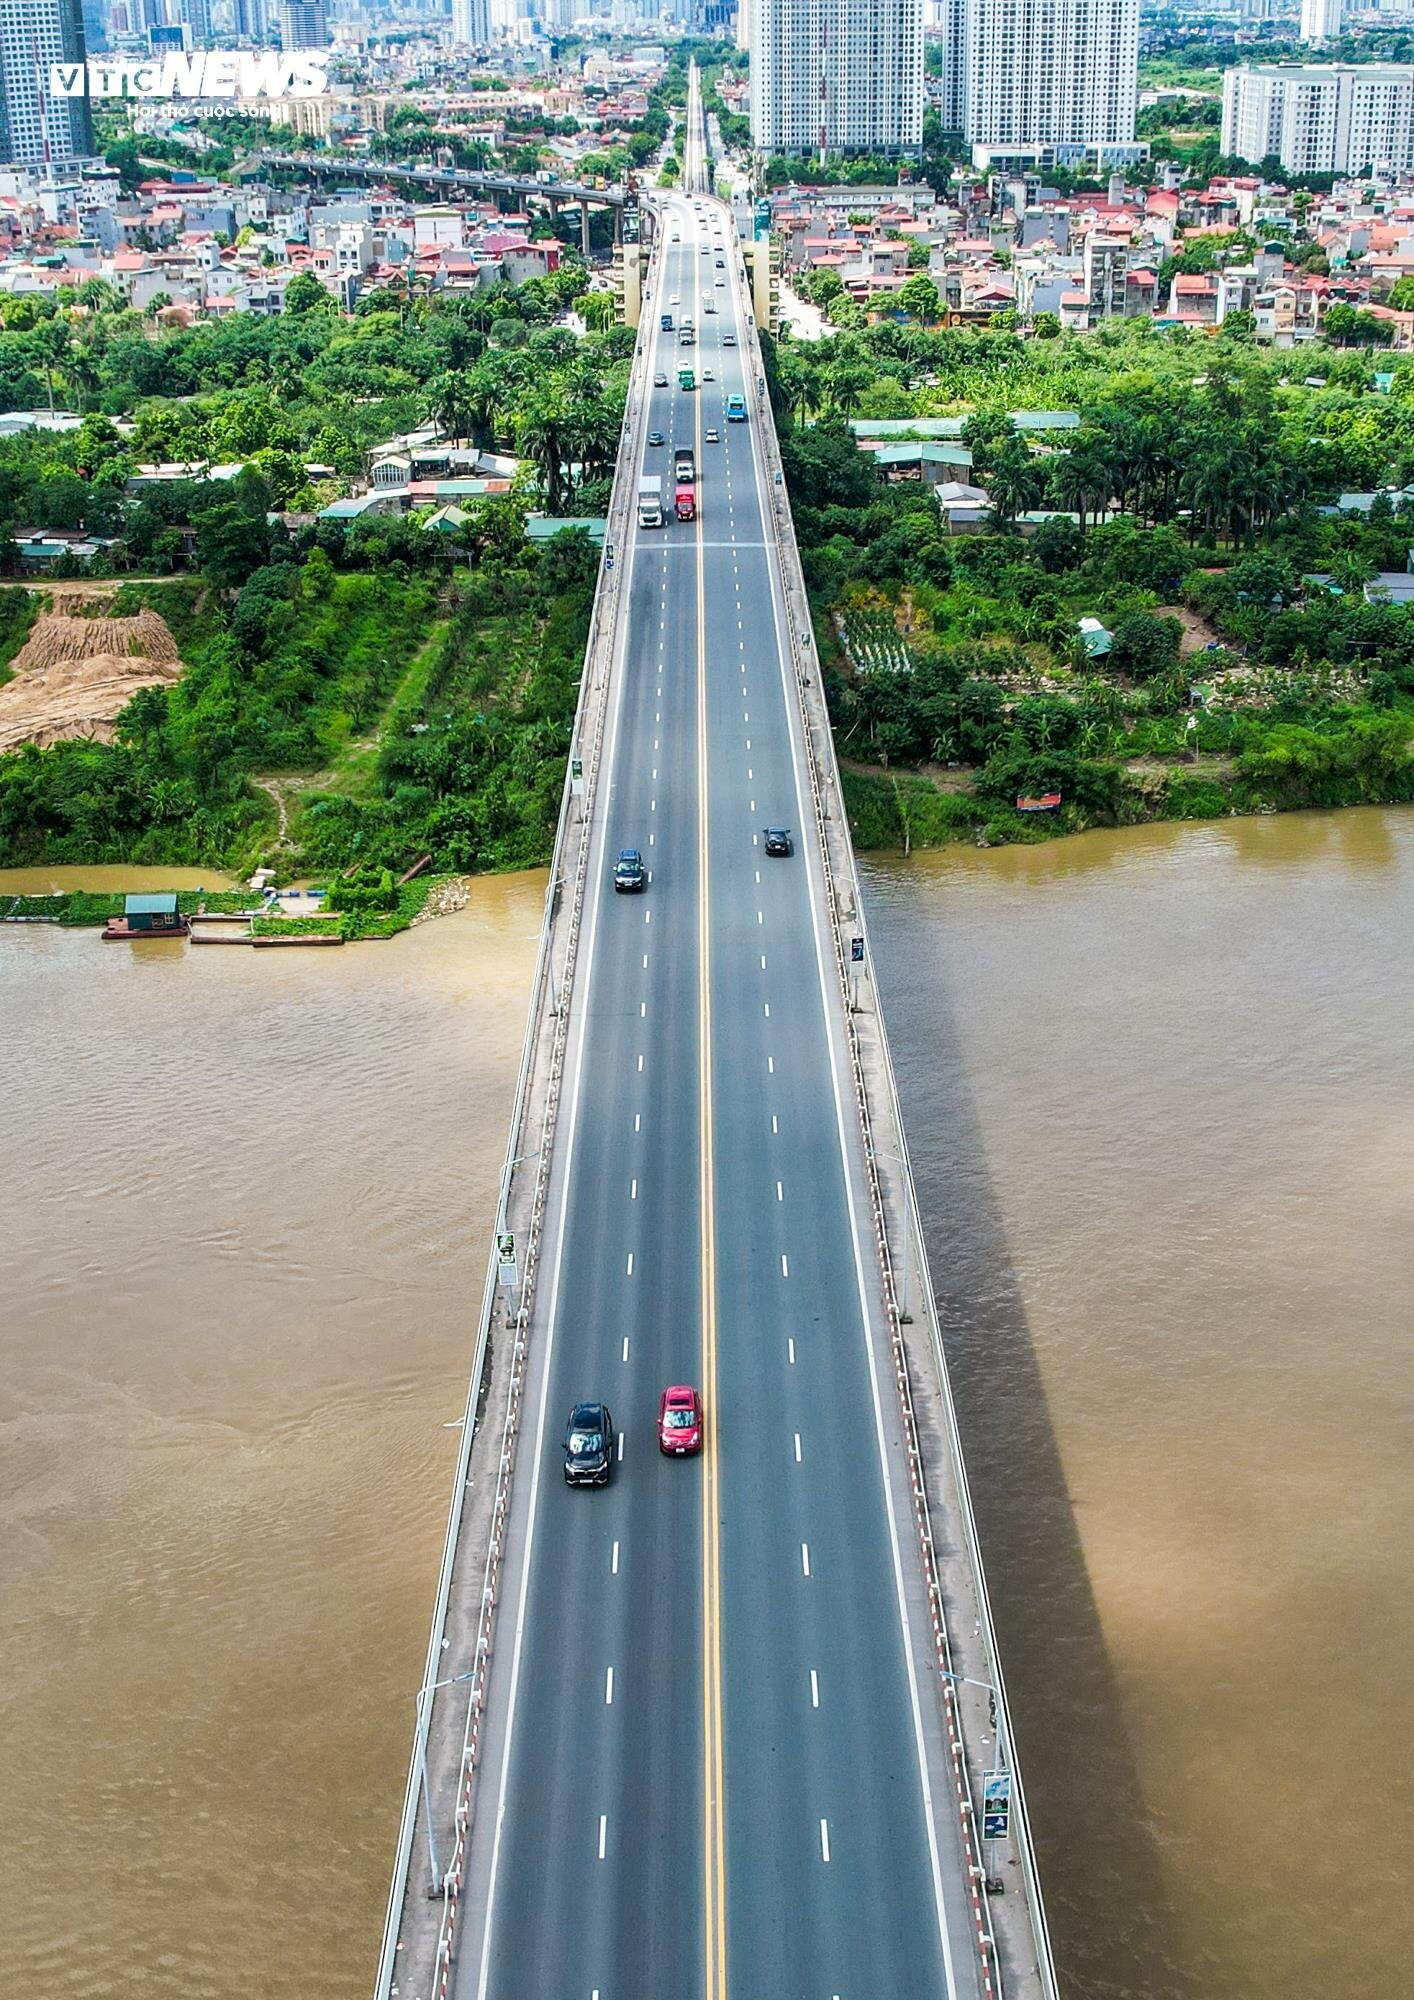 Cầu Thăng Long gần 40 năm tuổi bắc qua sông Hồng nhìn từ flycam - 7